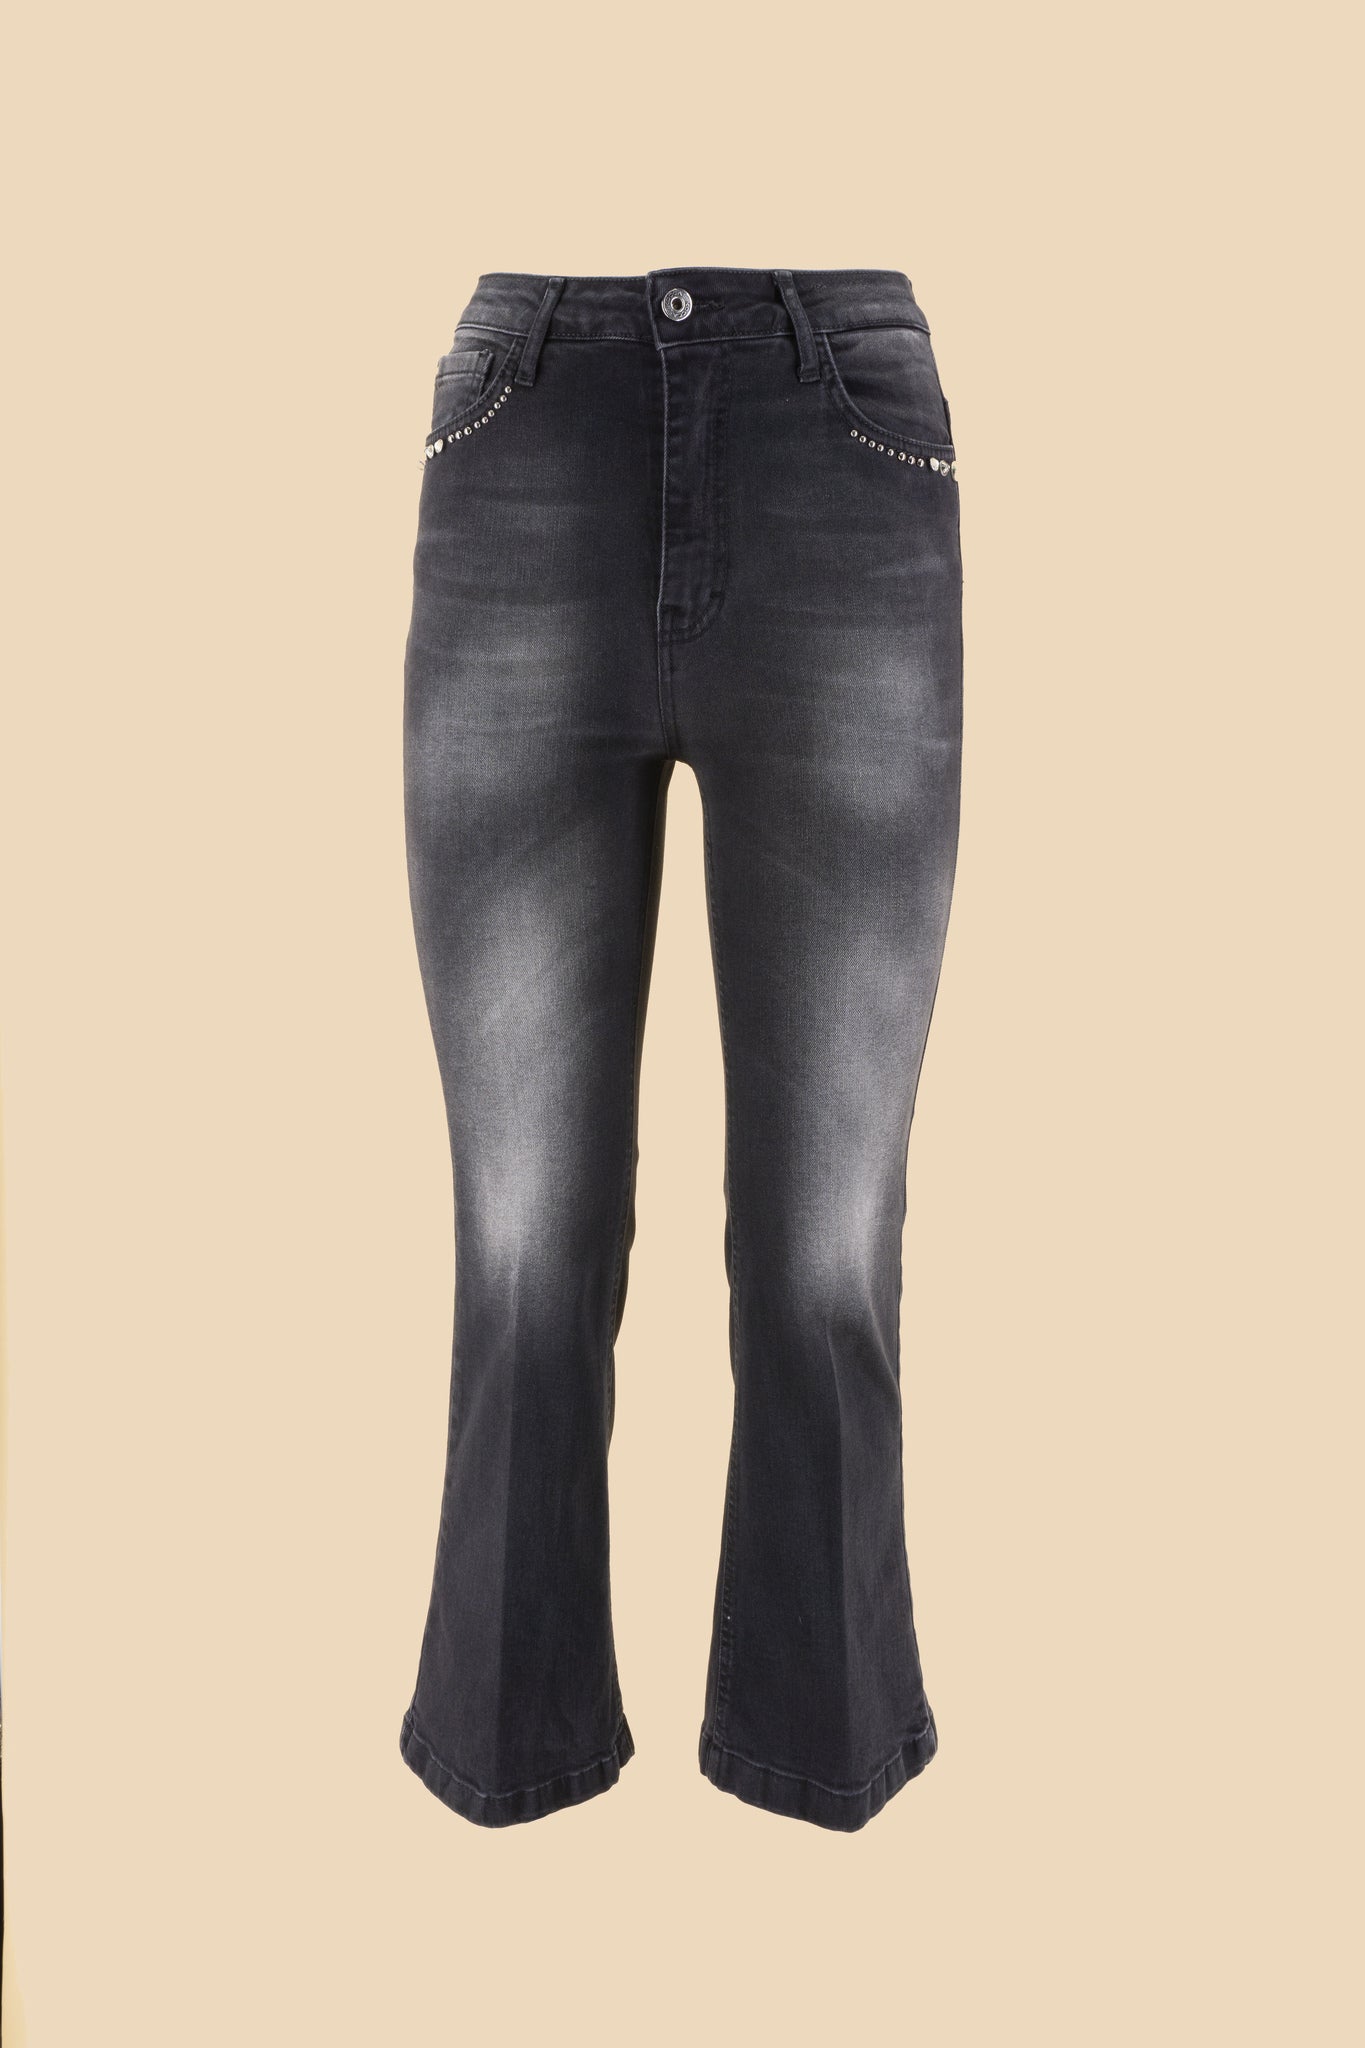 Jeans Grigio con Applicazioni / Grigio - Ideal Moda